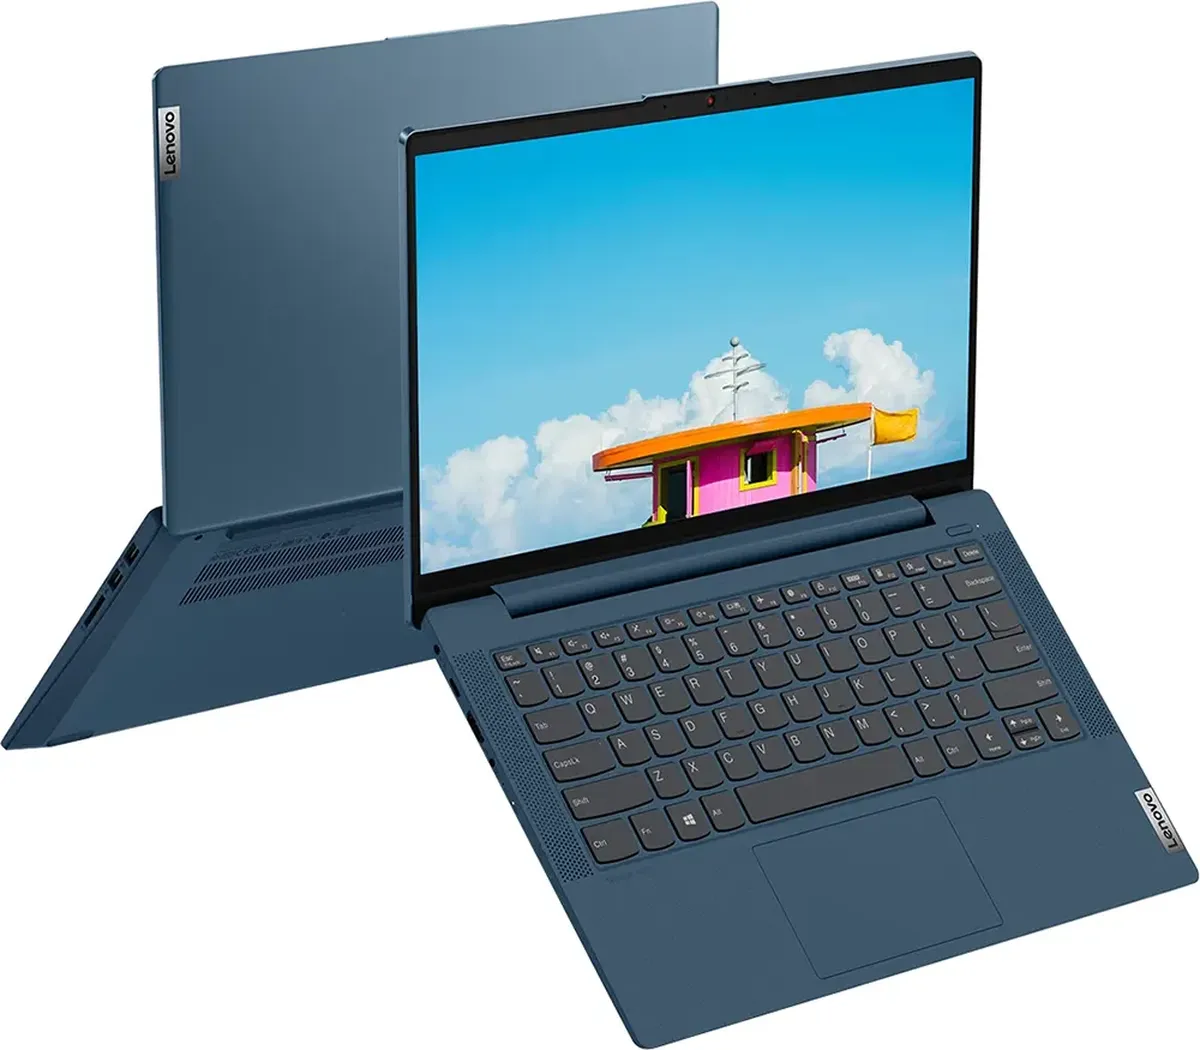 Ноутбук Lenovo Ideapad 5